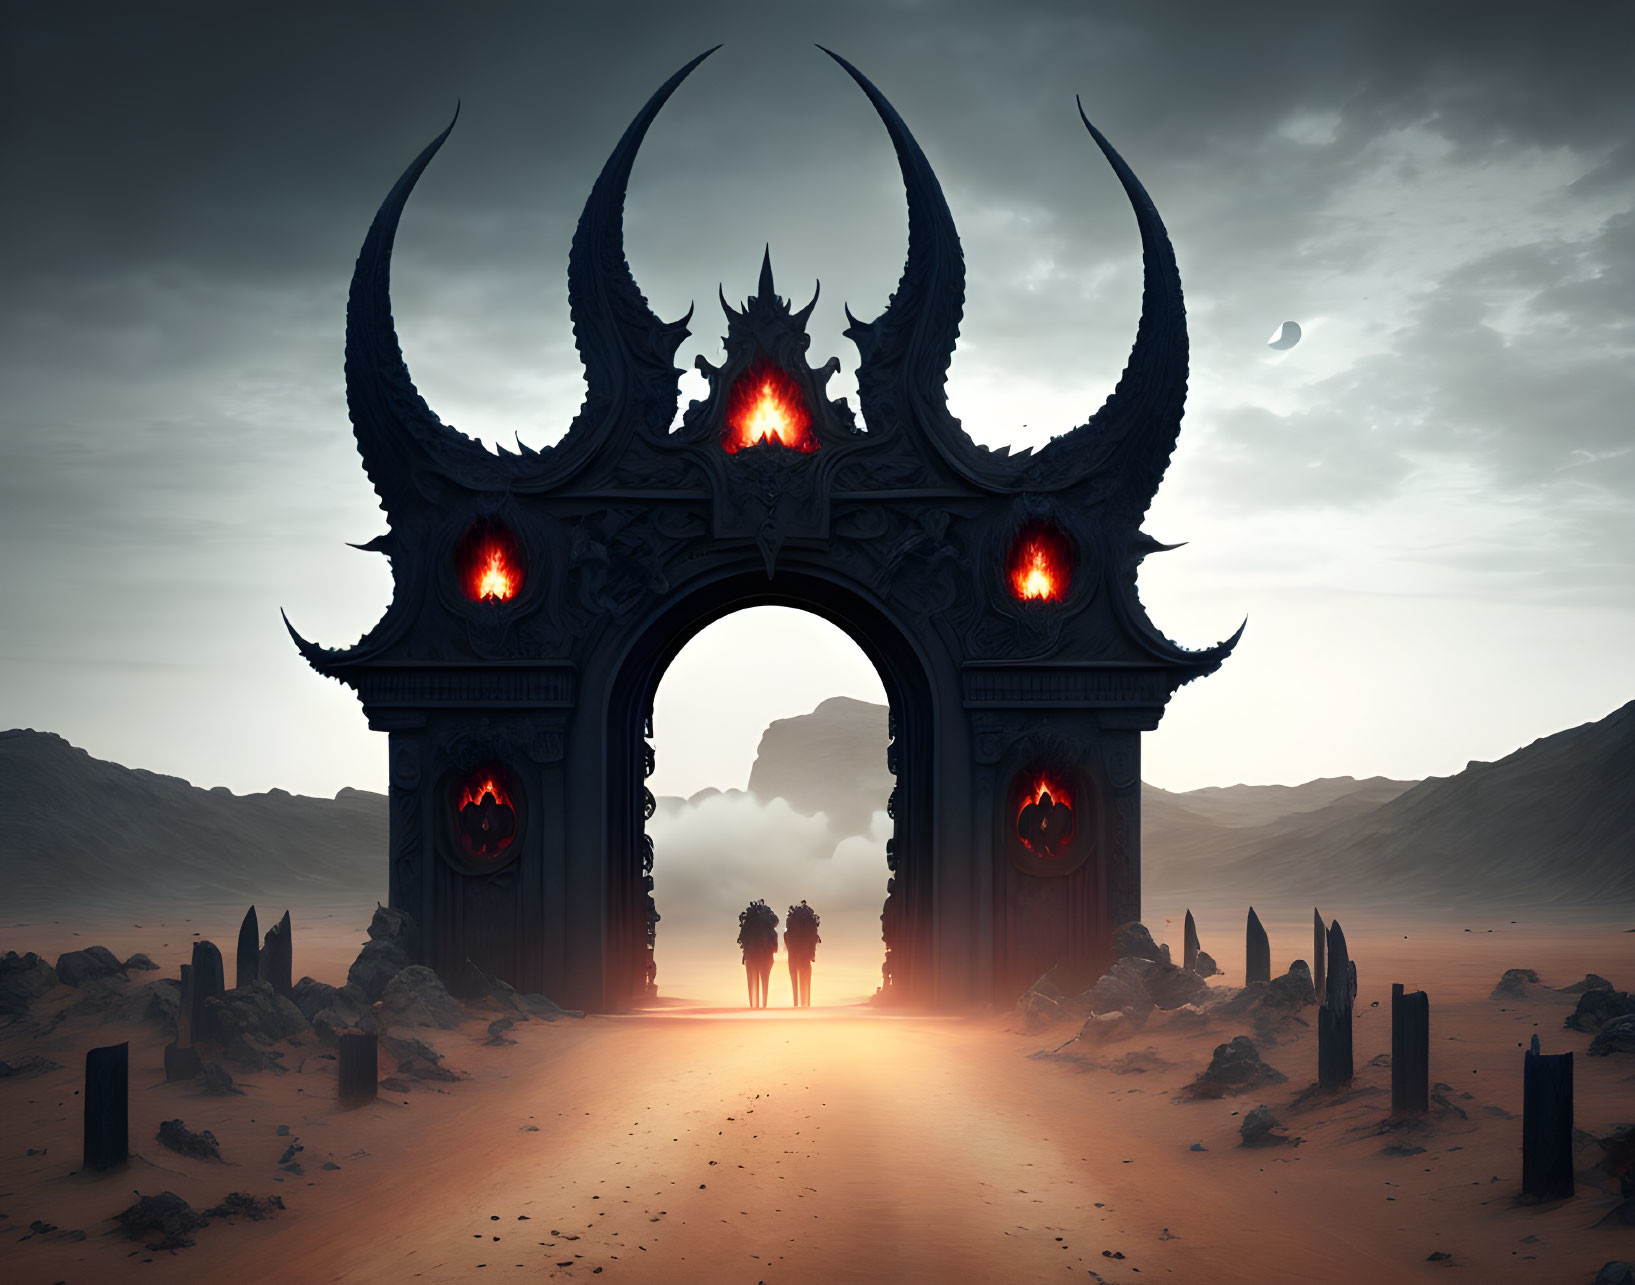 Fantasy scene: Two figures at ominous gate in desert dusk